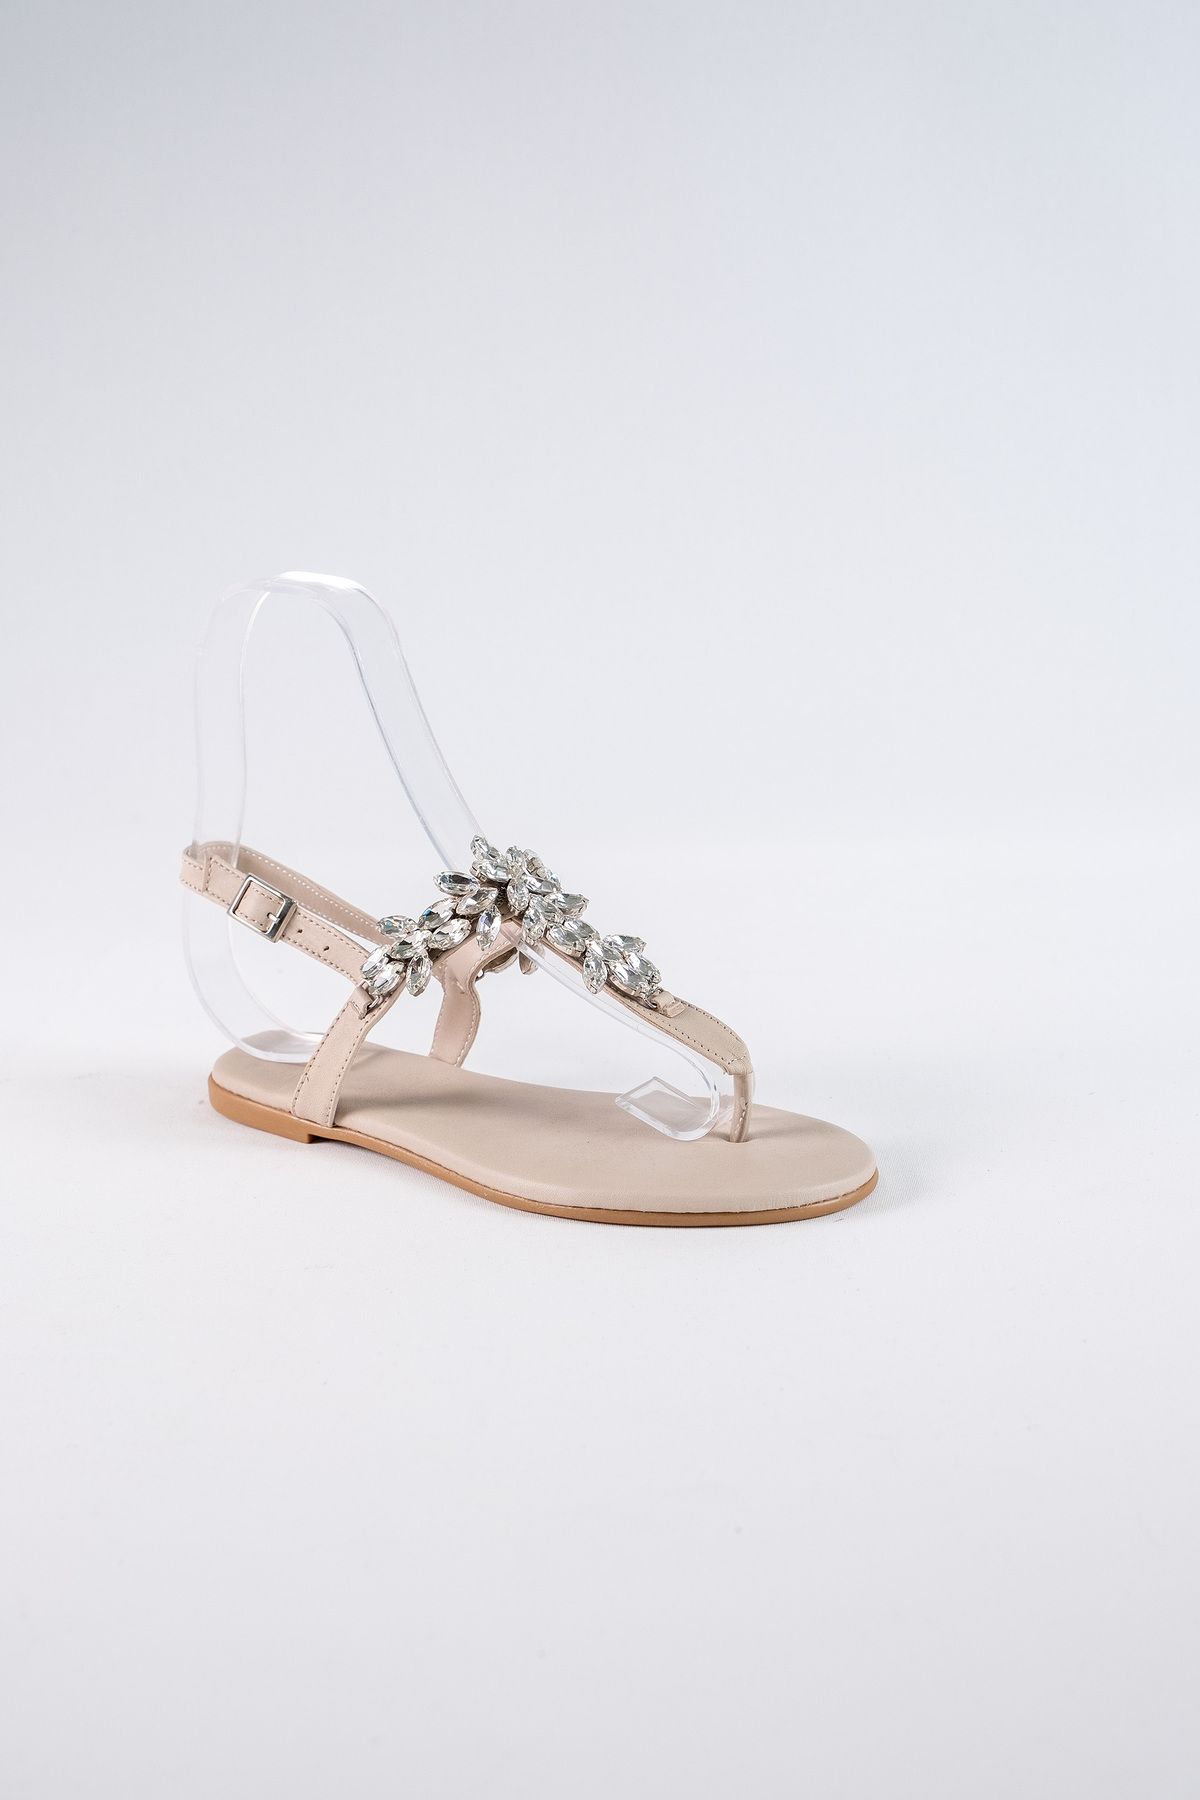 Oblavion Lavion Bej Kristal Taşlı Günlük Kadın Sandalet